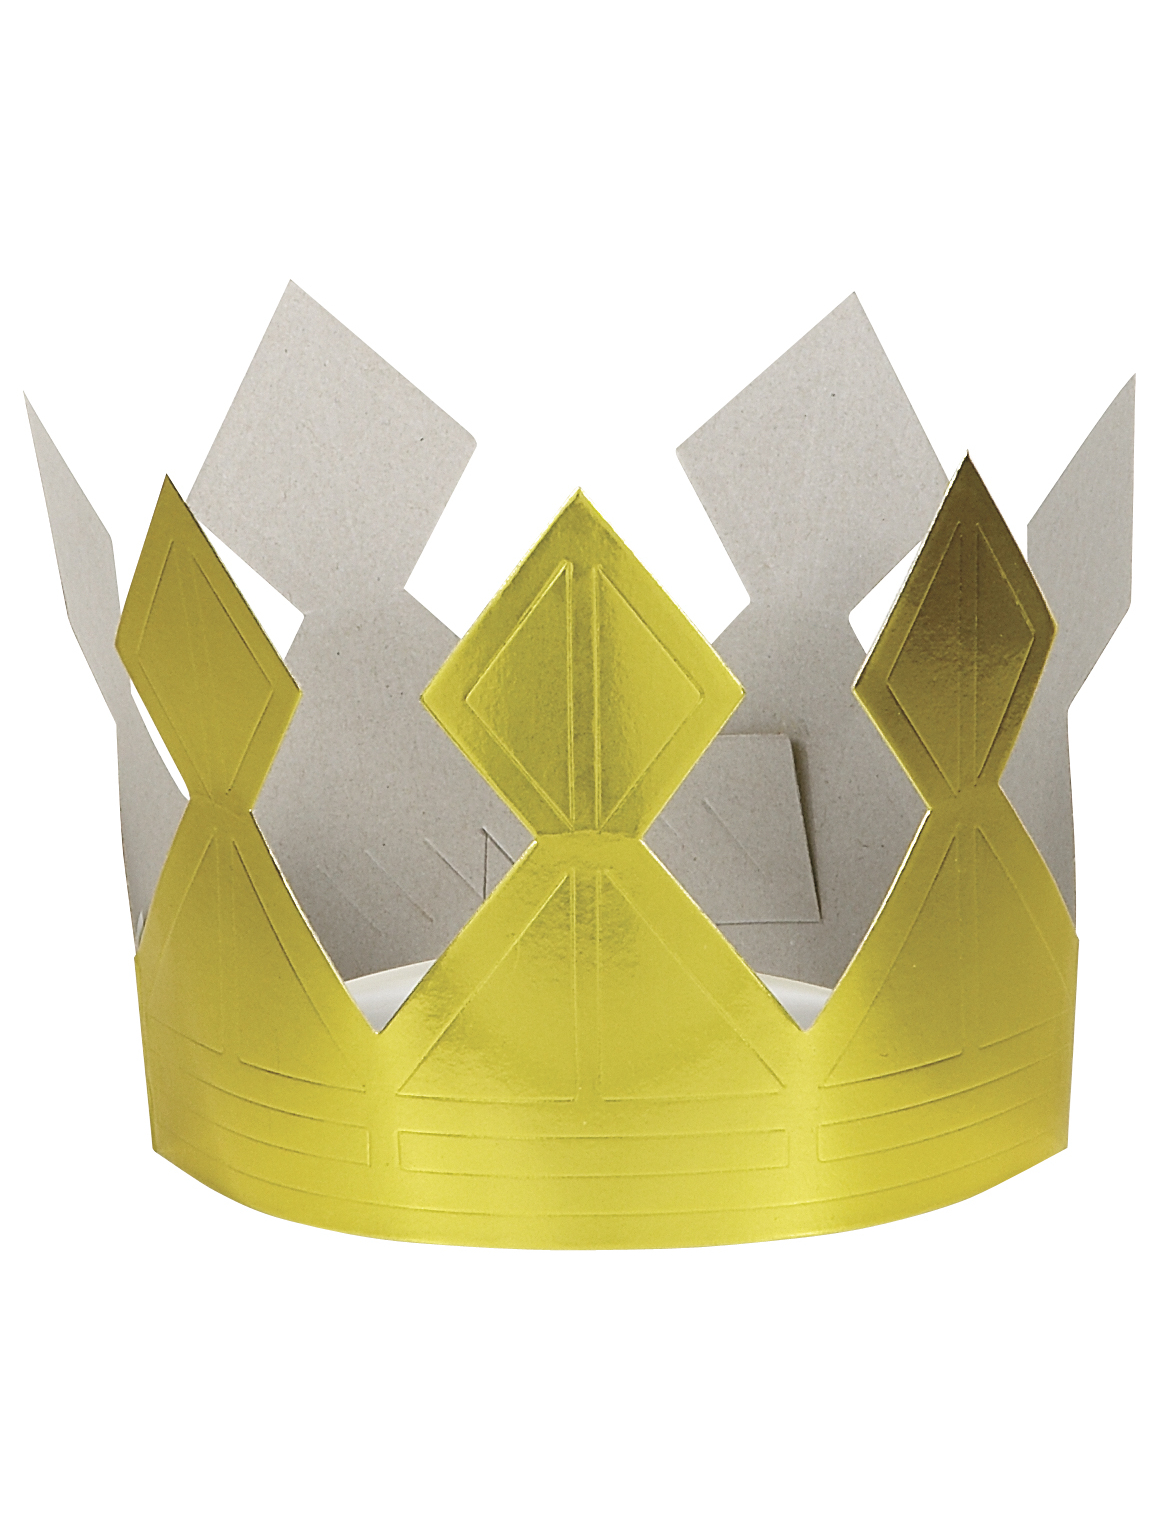 Как сделать из бумаги корону для принцессы: Ошибка 404. Нет такой страницы